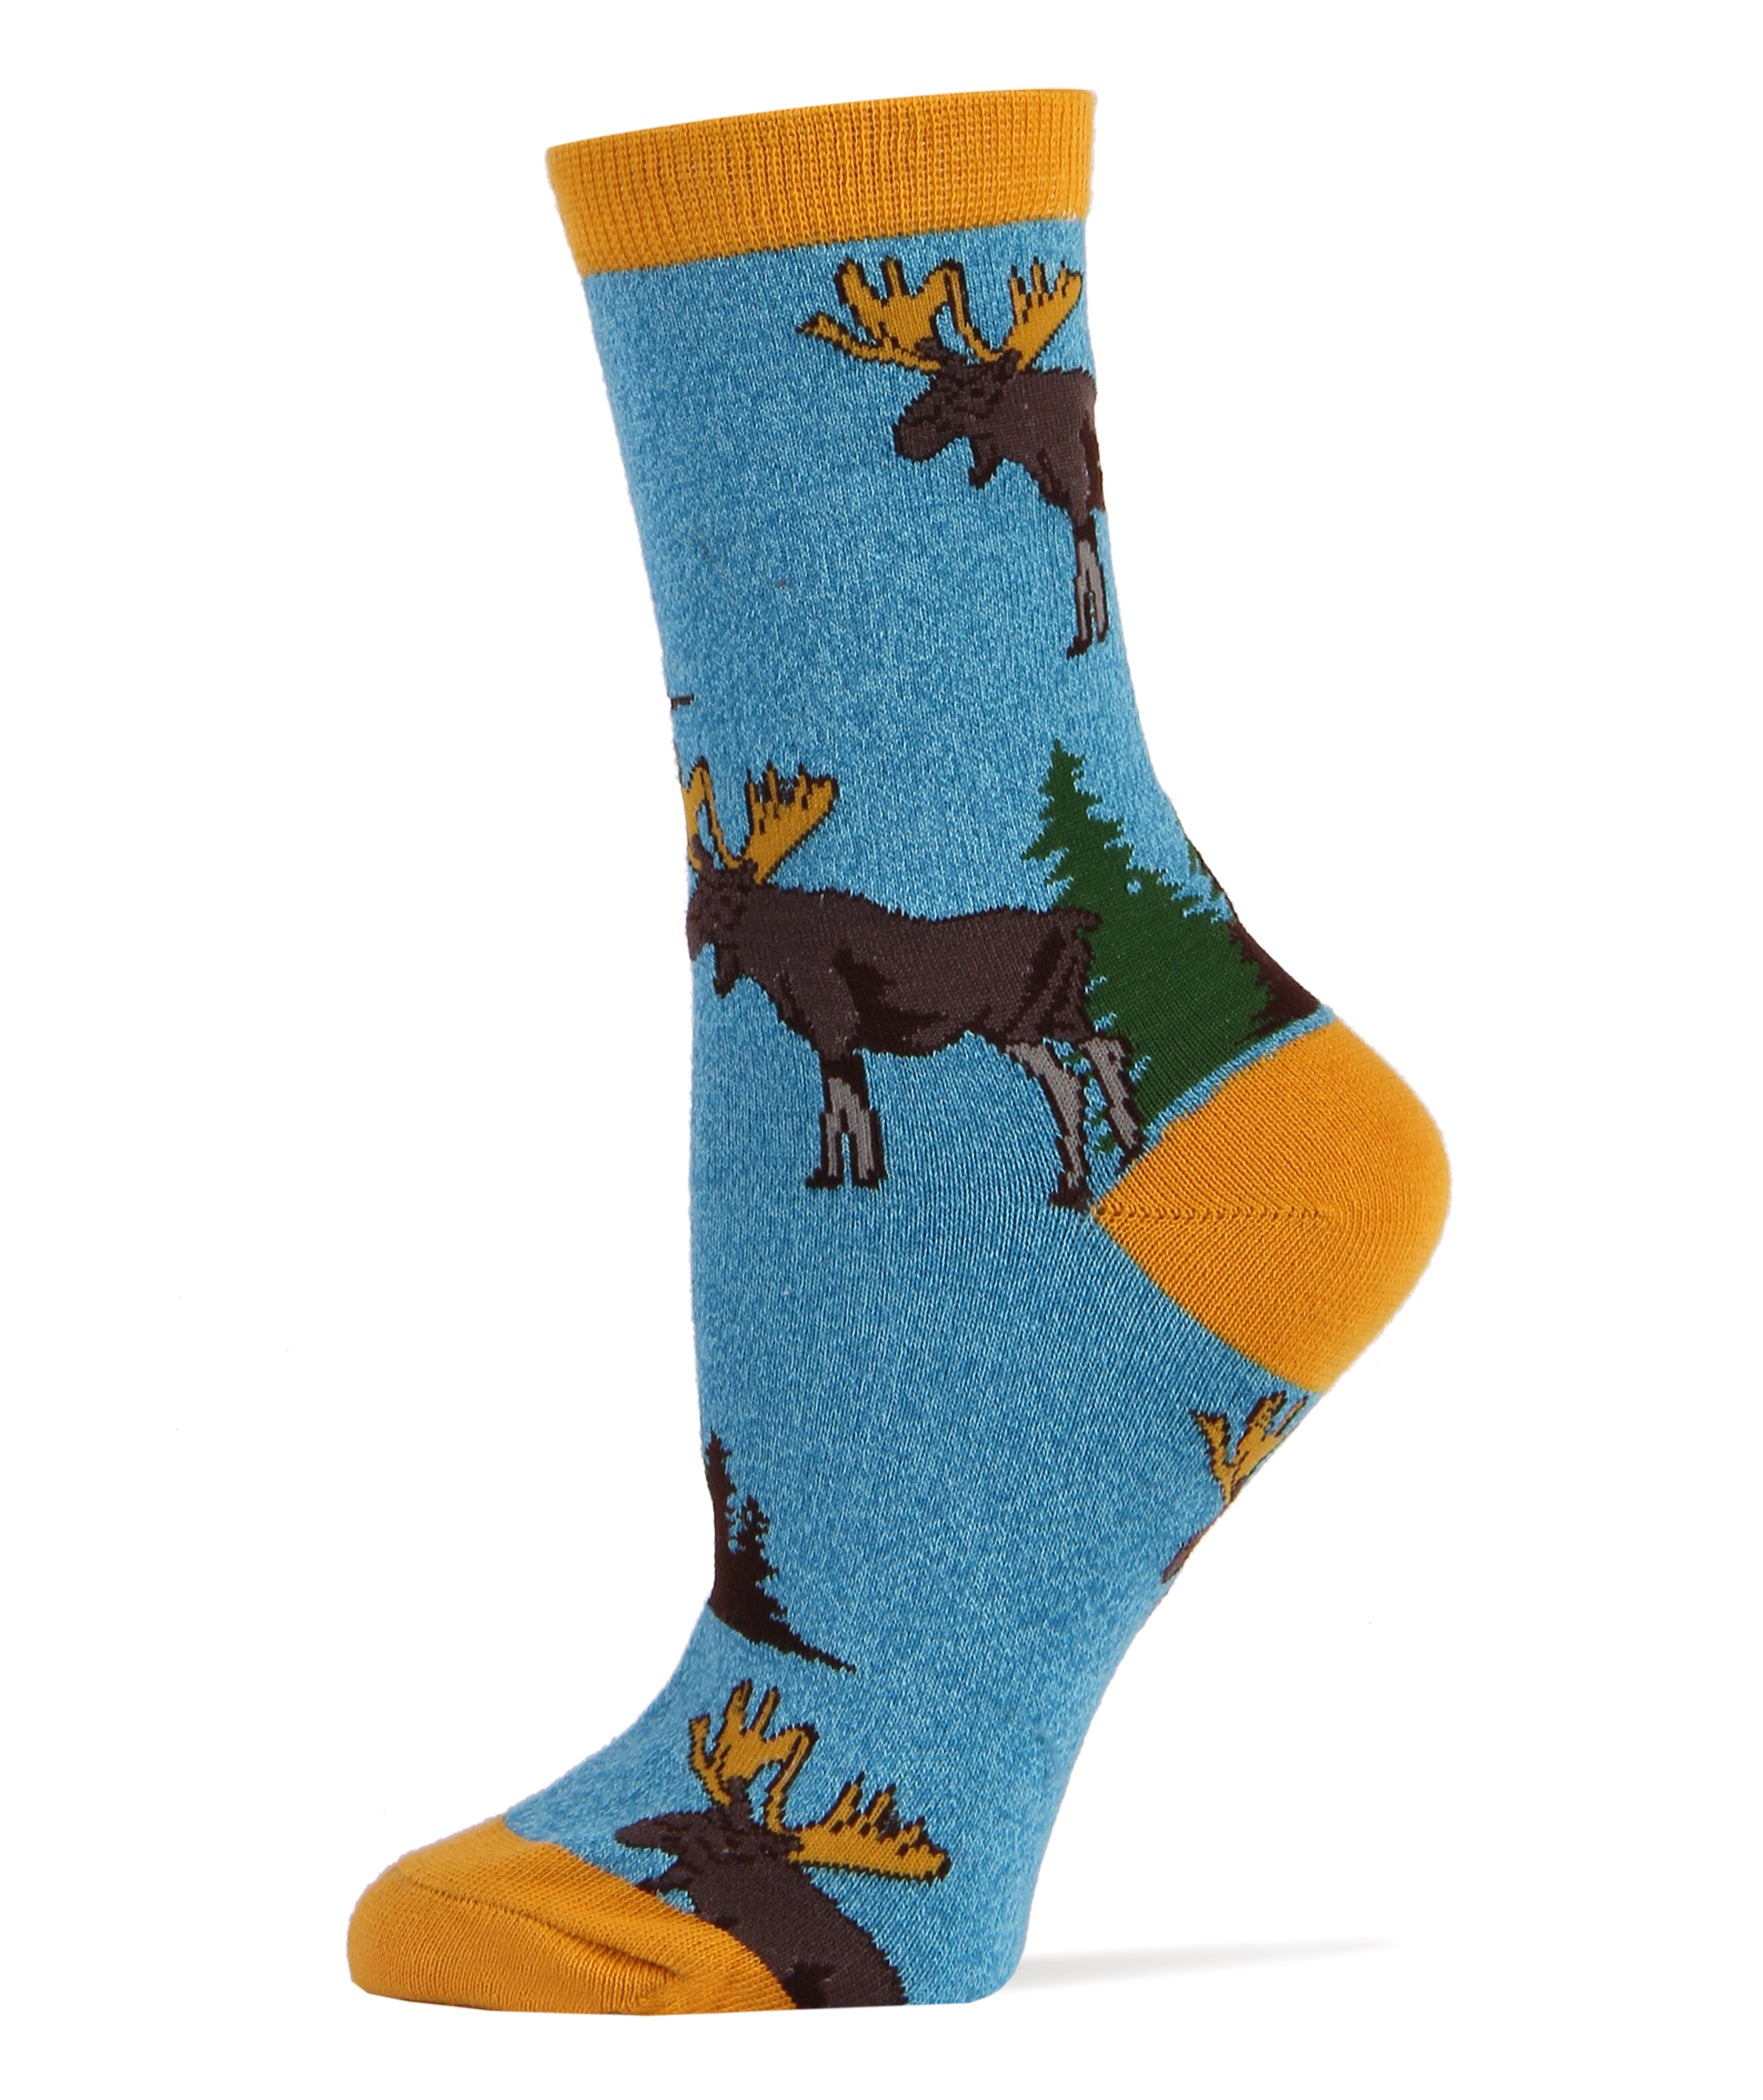 Moose Socks | Novelty Crew Socks For Women